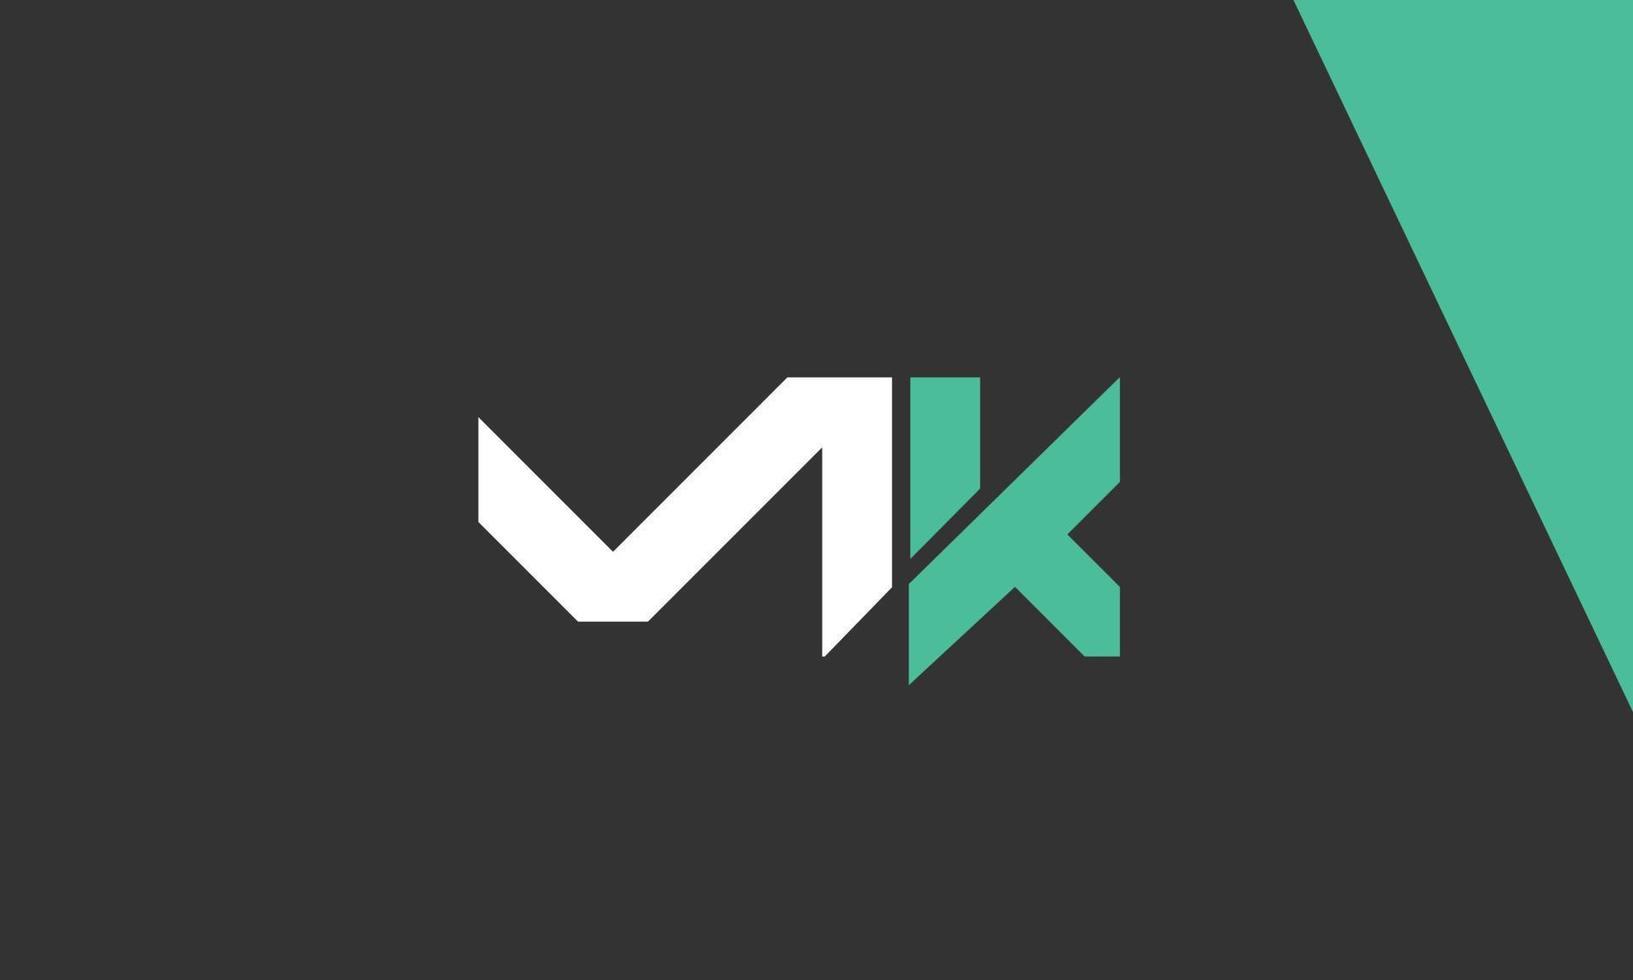 letras do alfabeto iniciais monograma logotipo mk, km, m e k vetor